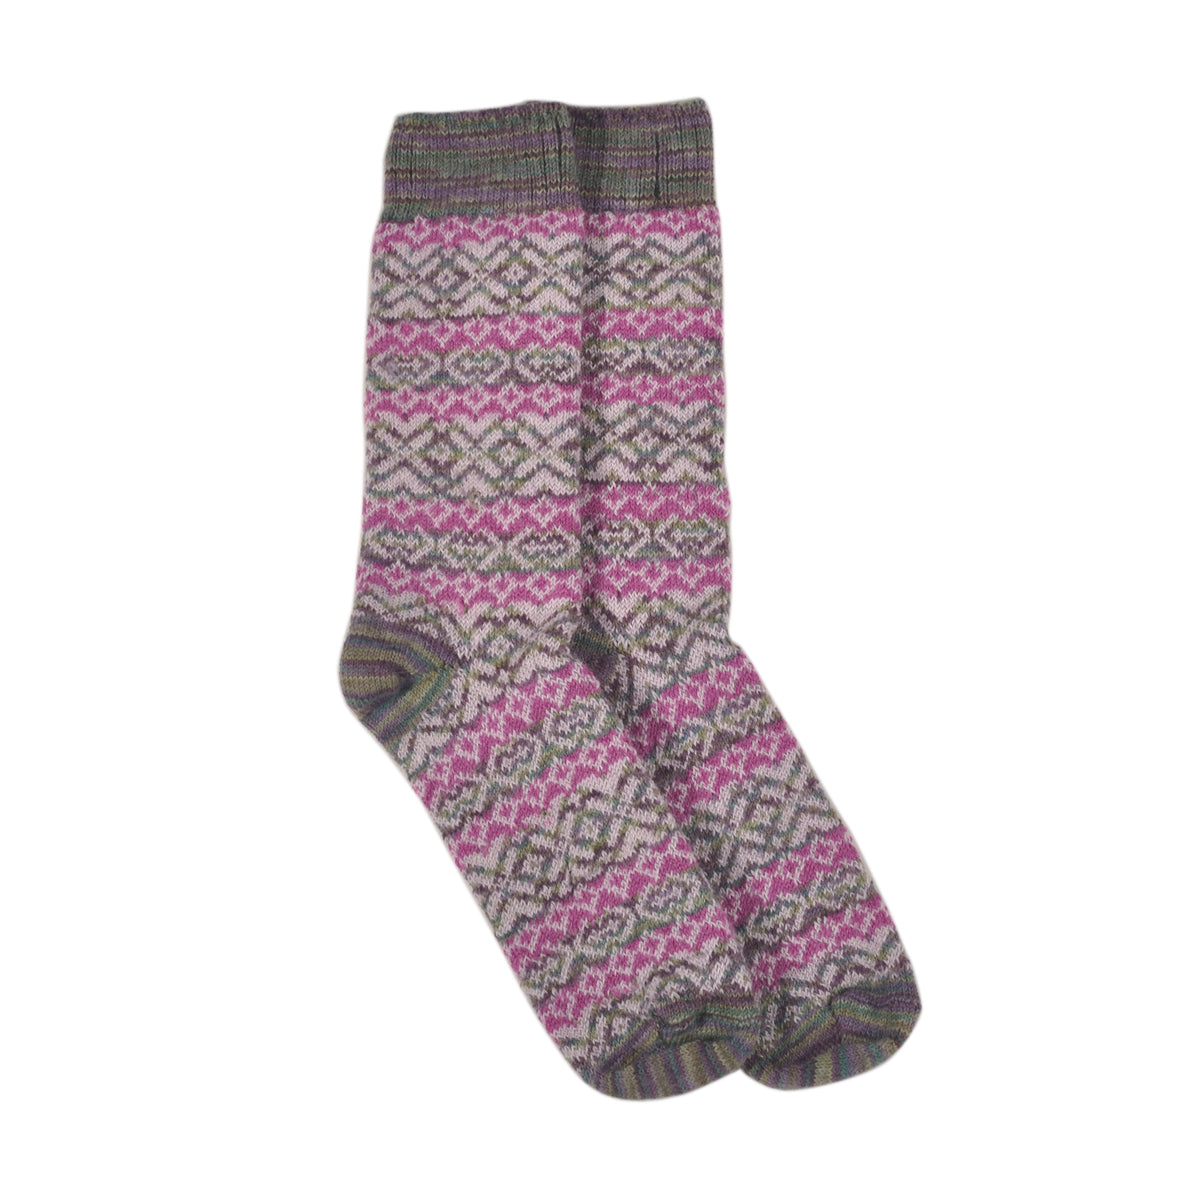 ラナート (LANART) 米国製ベビーアルパカソックス靴下 Artistic Baby Alpaca Socks[MONET/PINK]